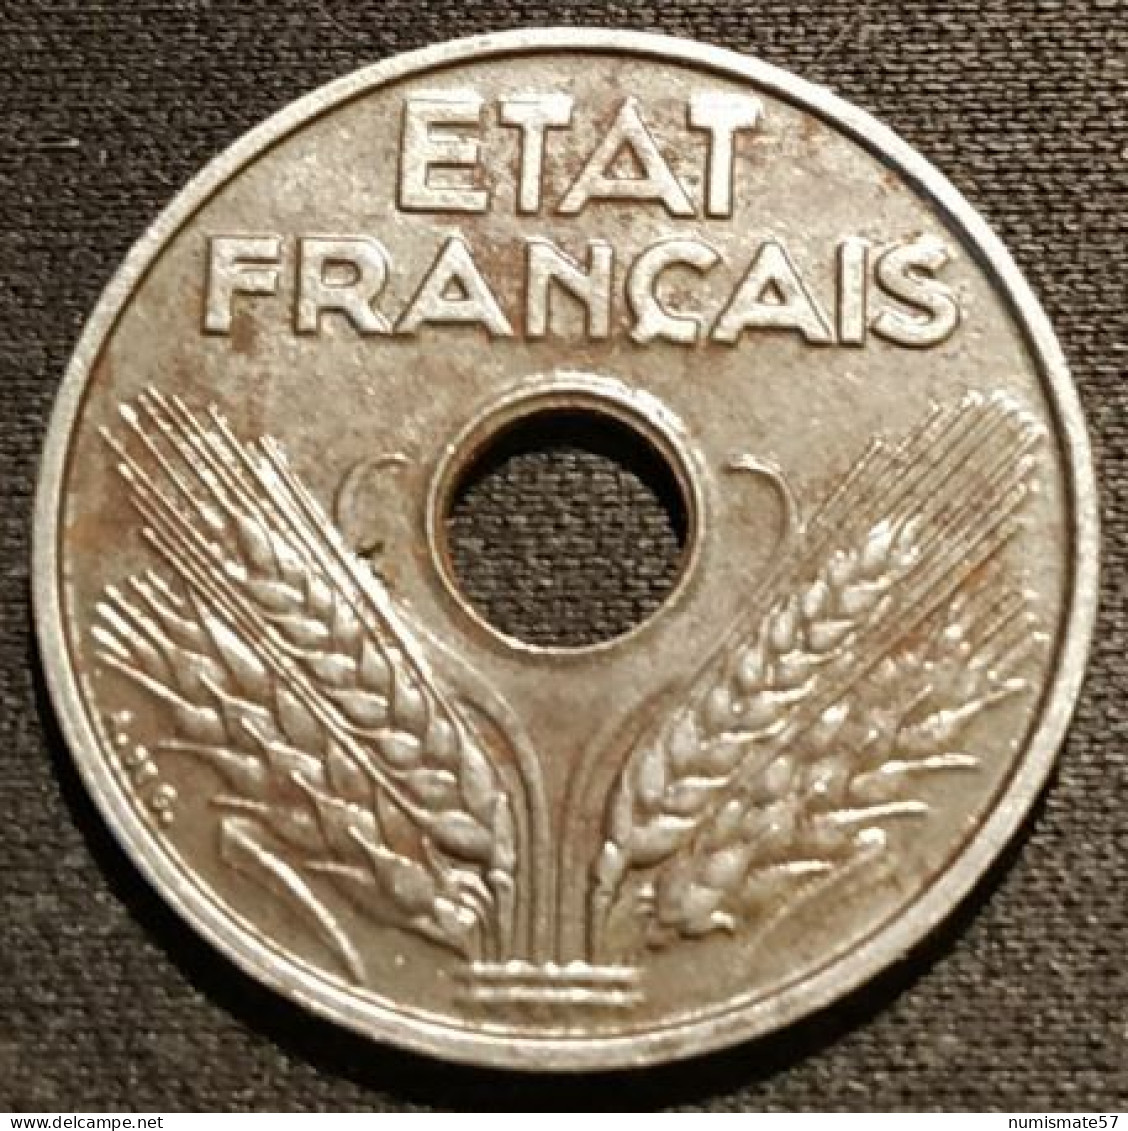 RARE - FRANCE - 20 CENTIMES 1944 - Fer - Etat Français - Tranche Lisse - Gad 322 - KM 900.2a - 20 Centimes